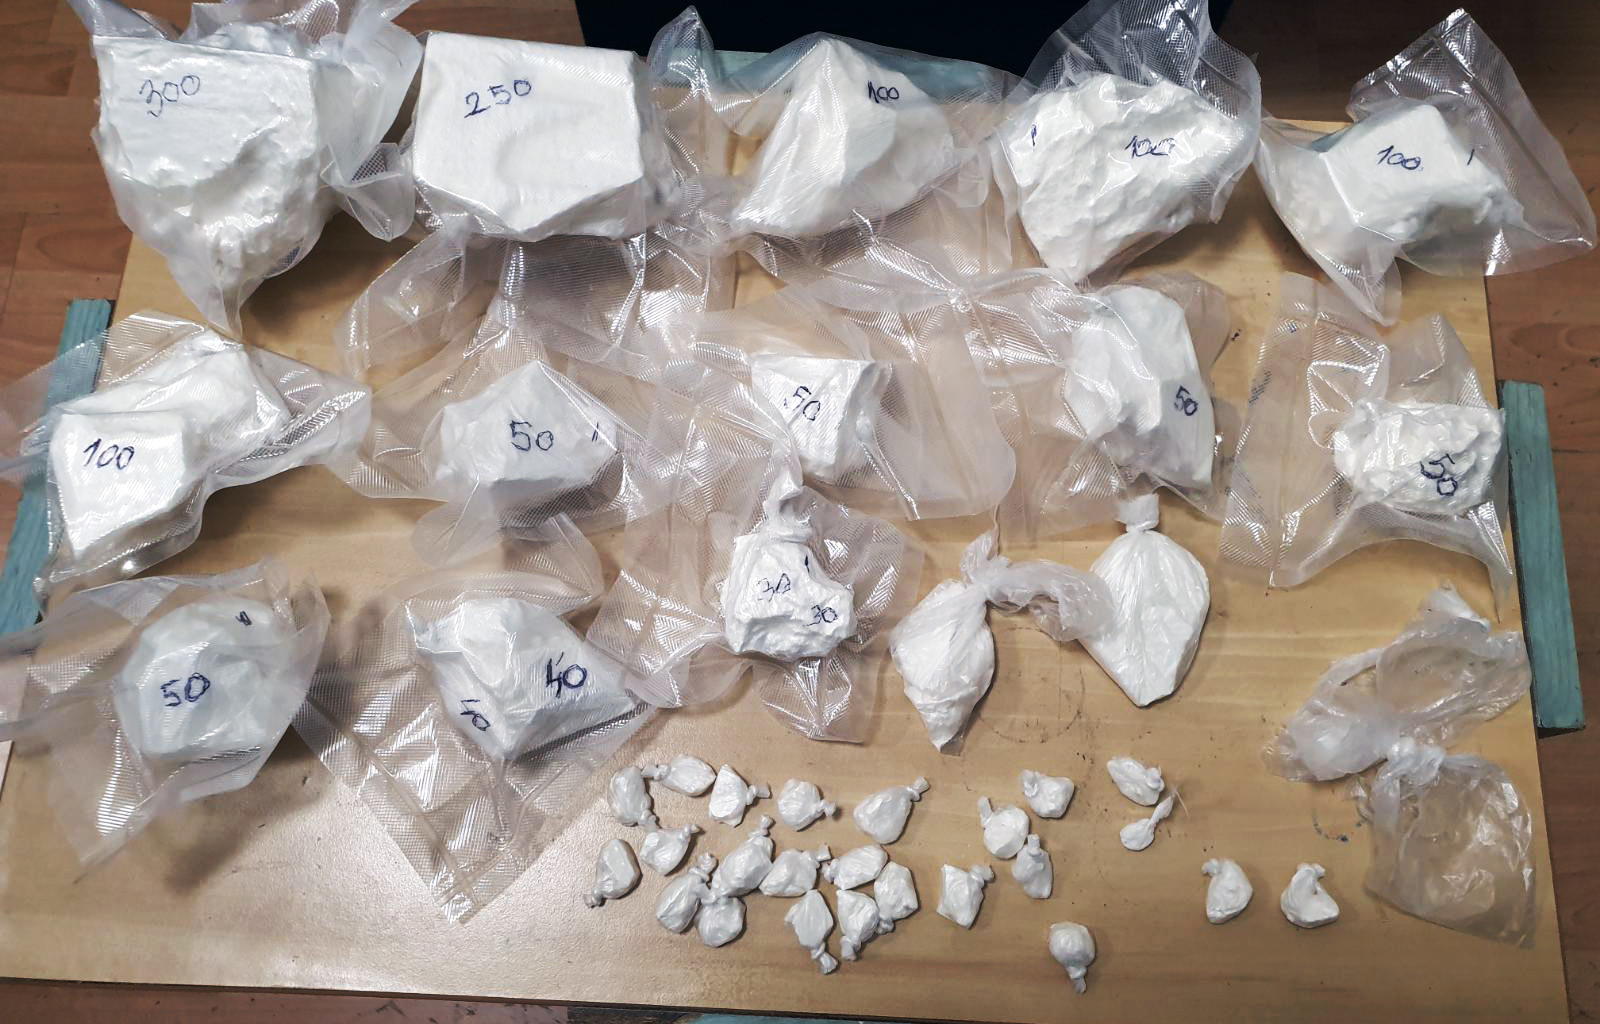 Полиција у две одвојене акције запленила око килограм и по кокаина и два килограма амфетамина